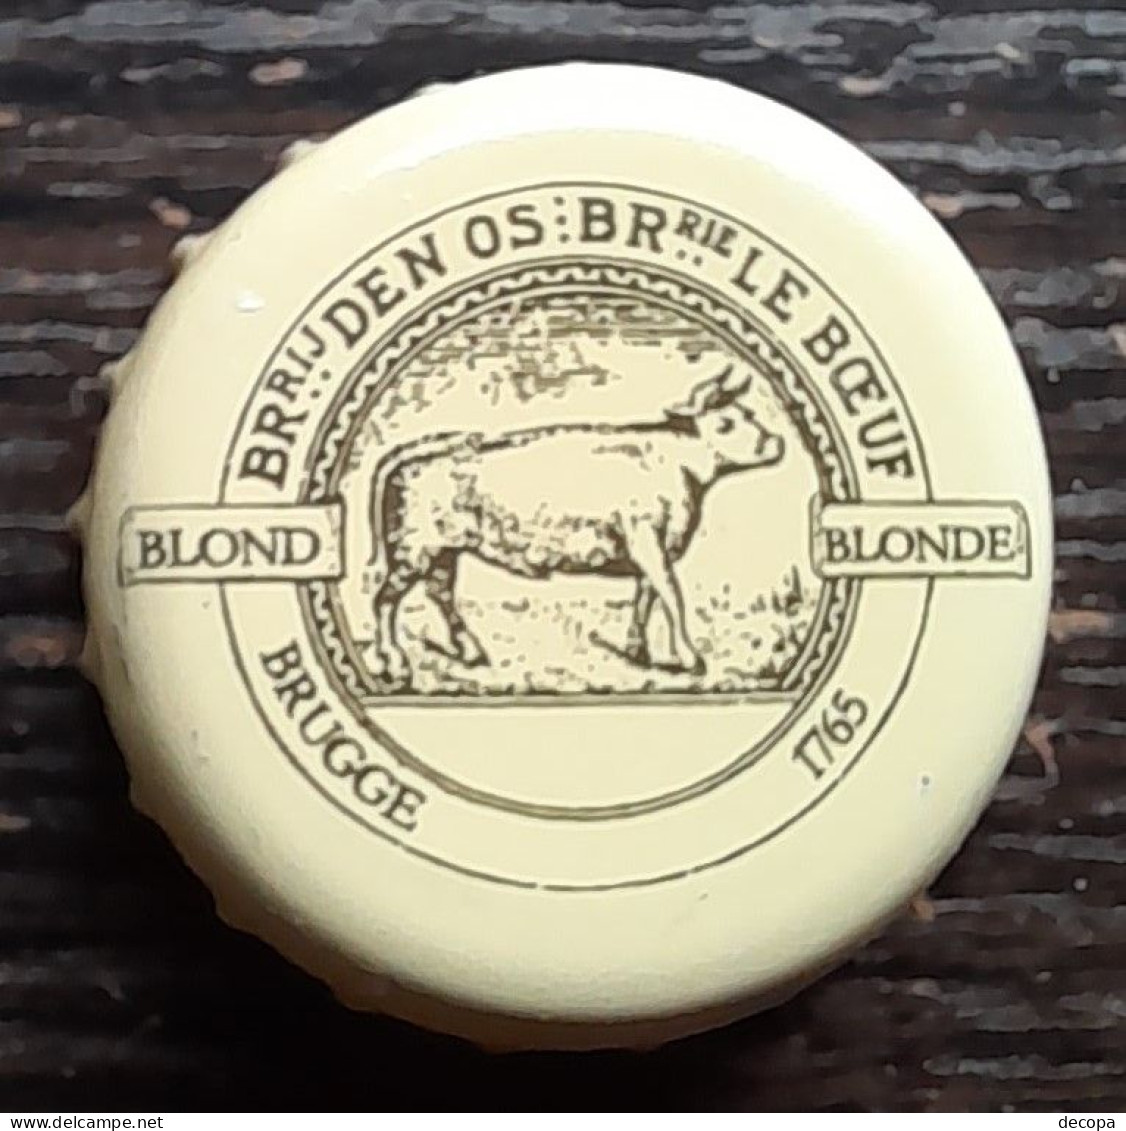 (db-308) Belgium - Belgique - België   Blonden Os -  Br. Bourgogne De Flandres  -  Brugge - Beer